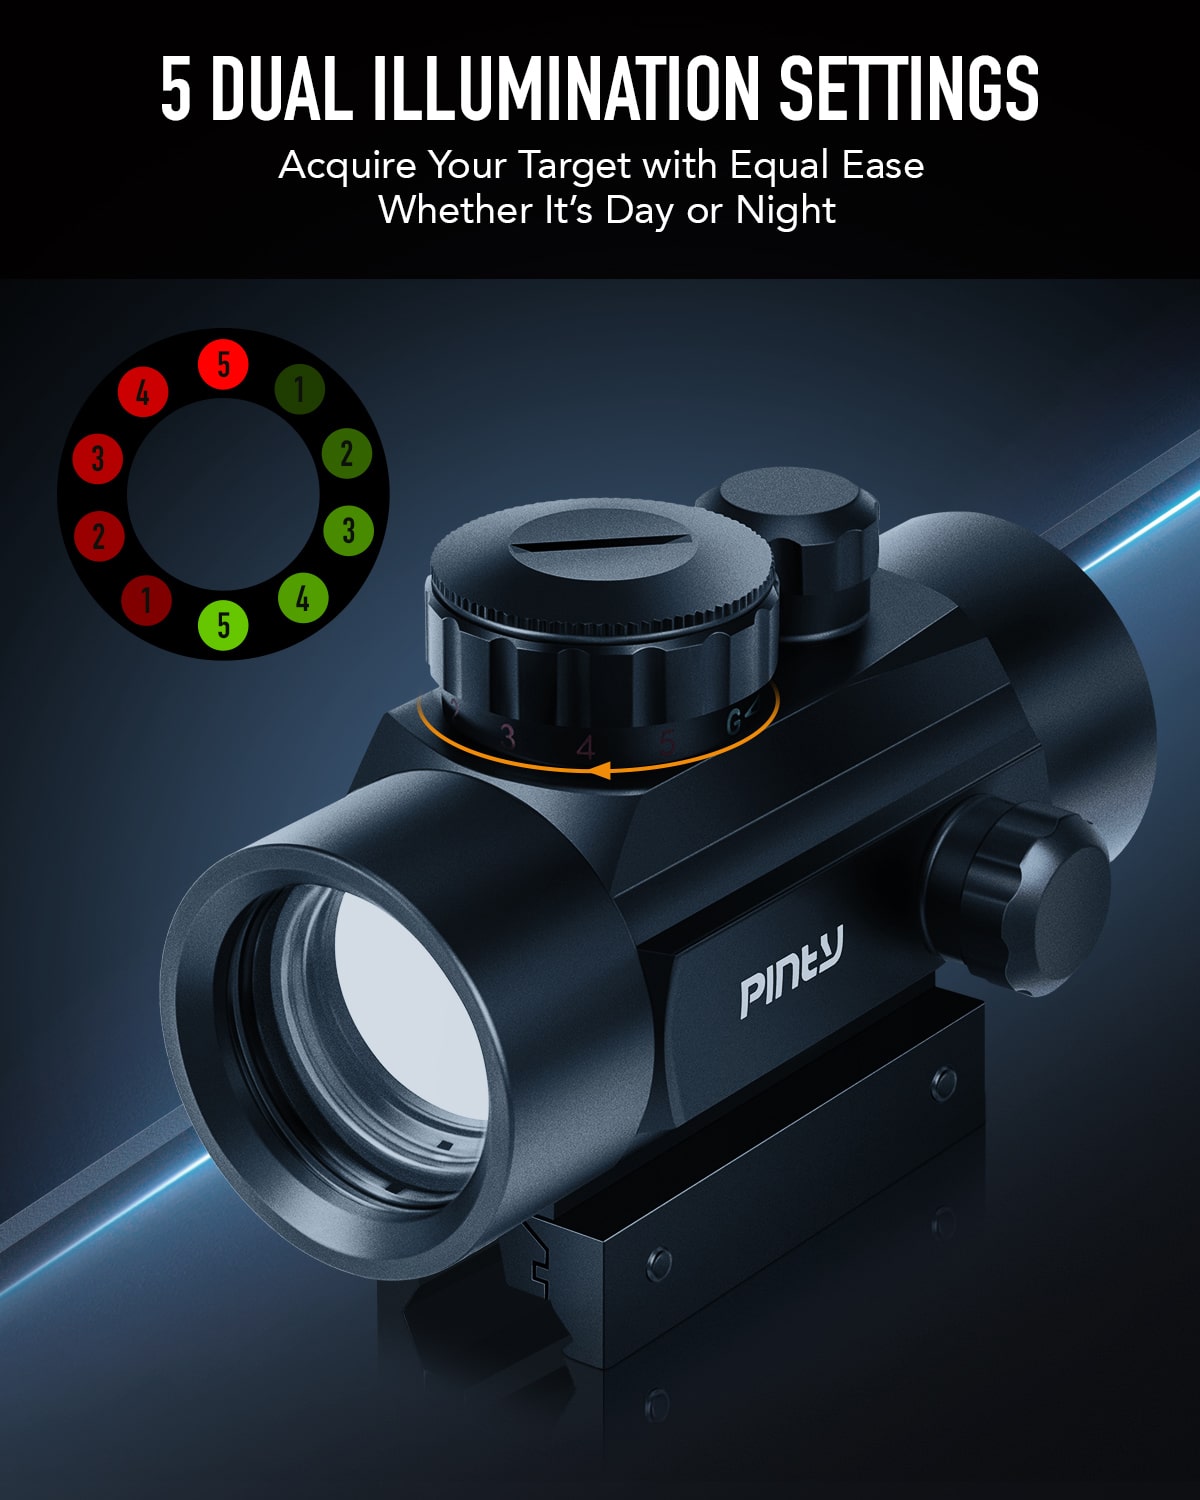 1x40mm Reflex Red Green Dot Sight Riflescope 